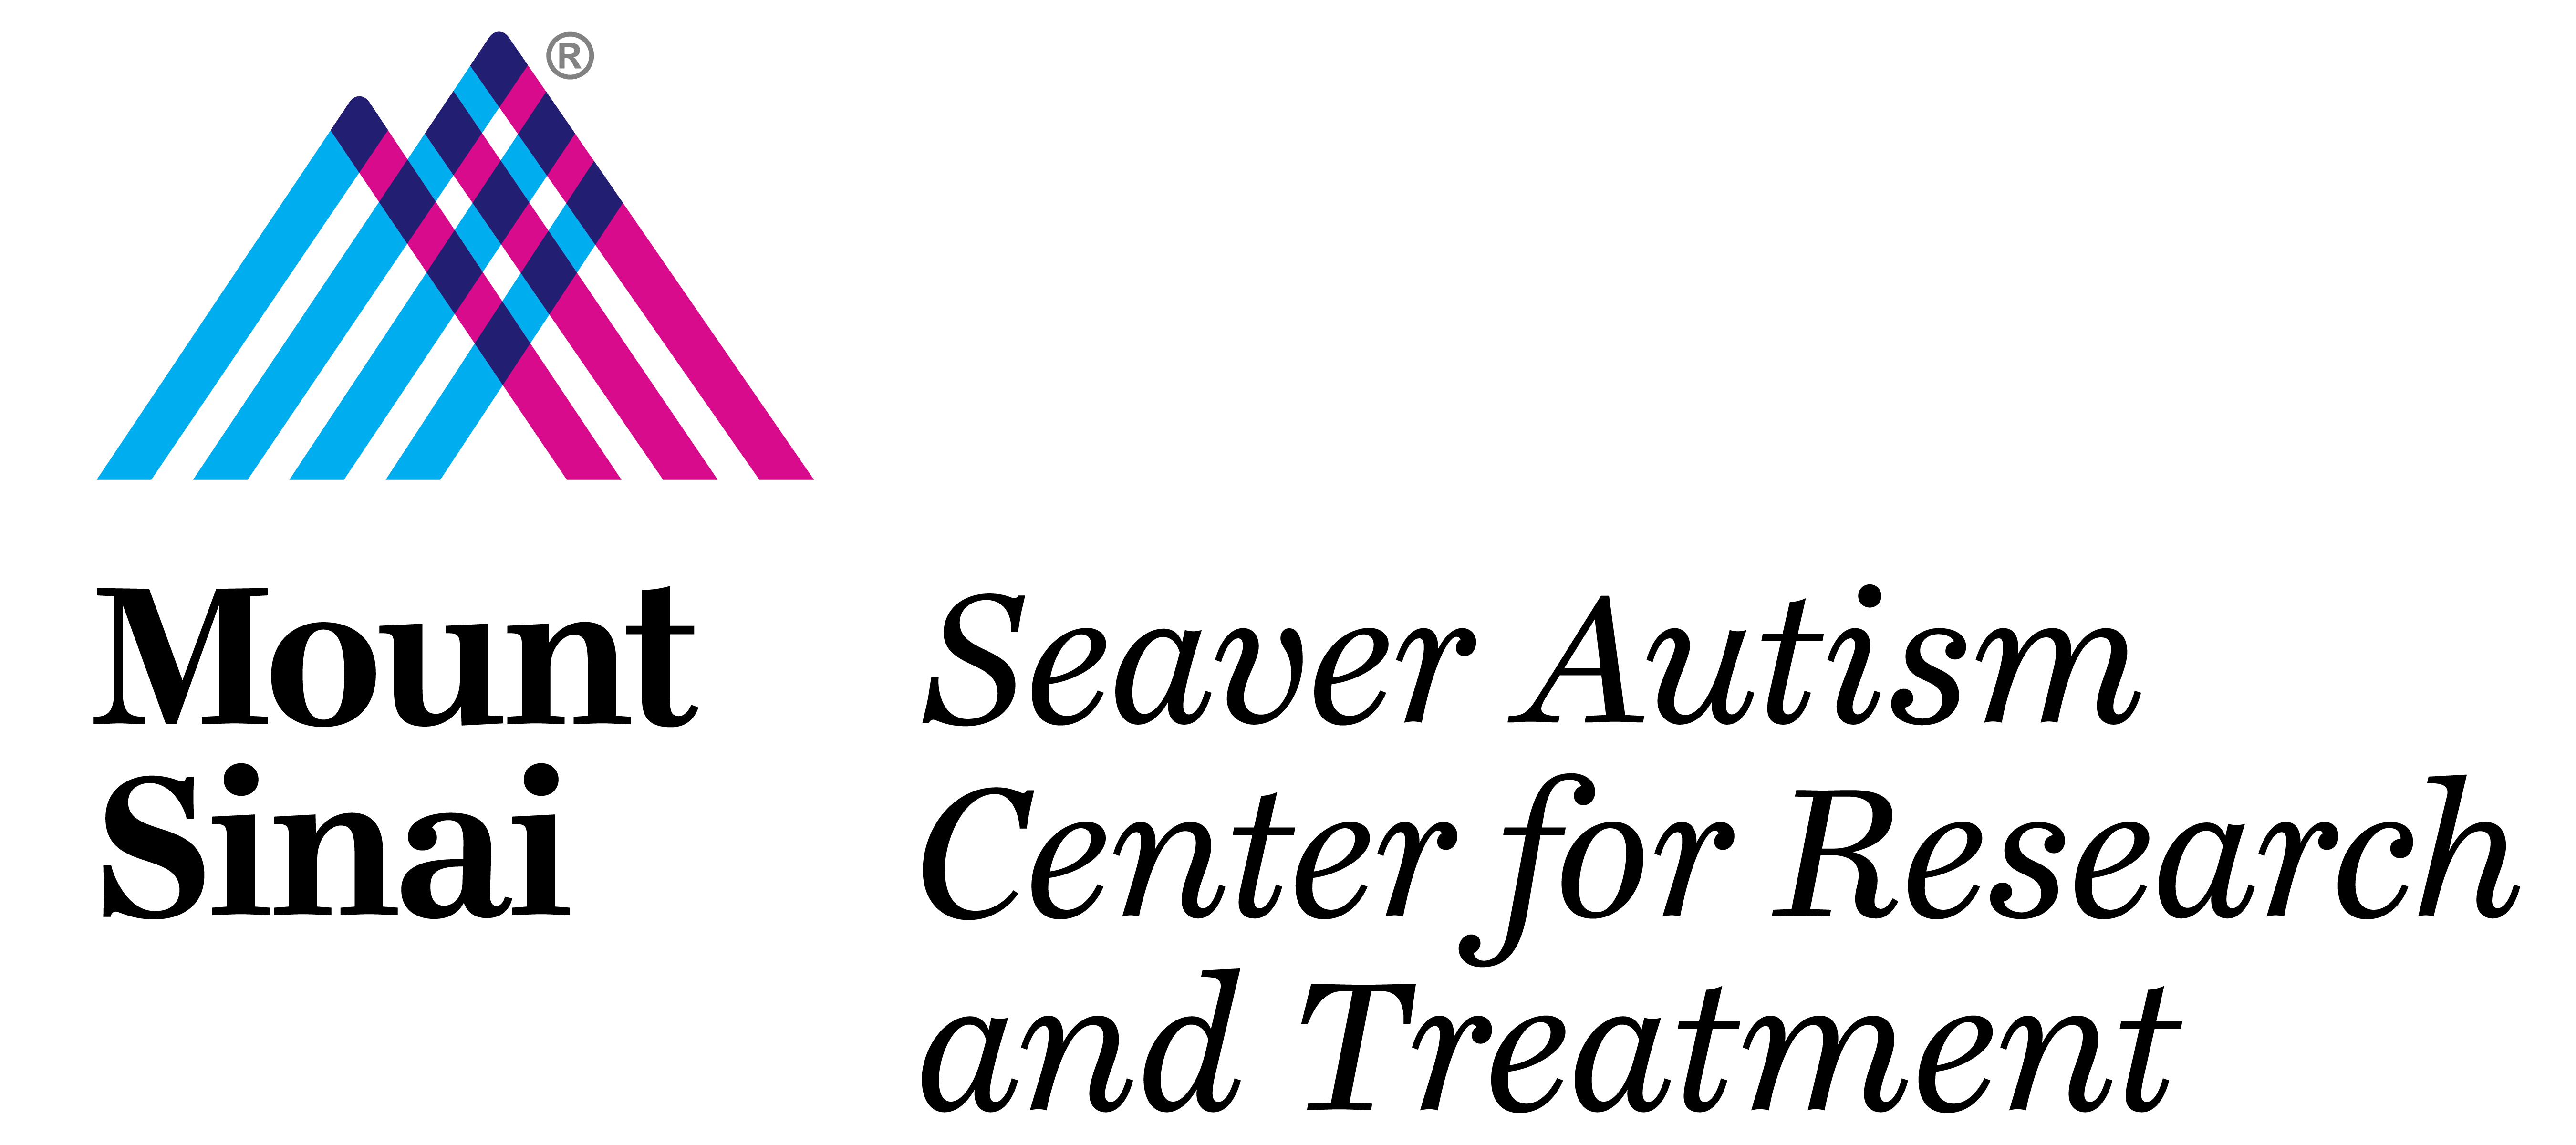 1 Seaver Autism Center